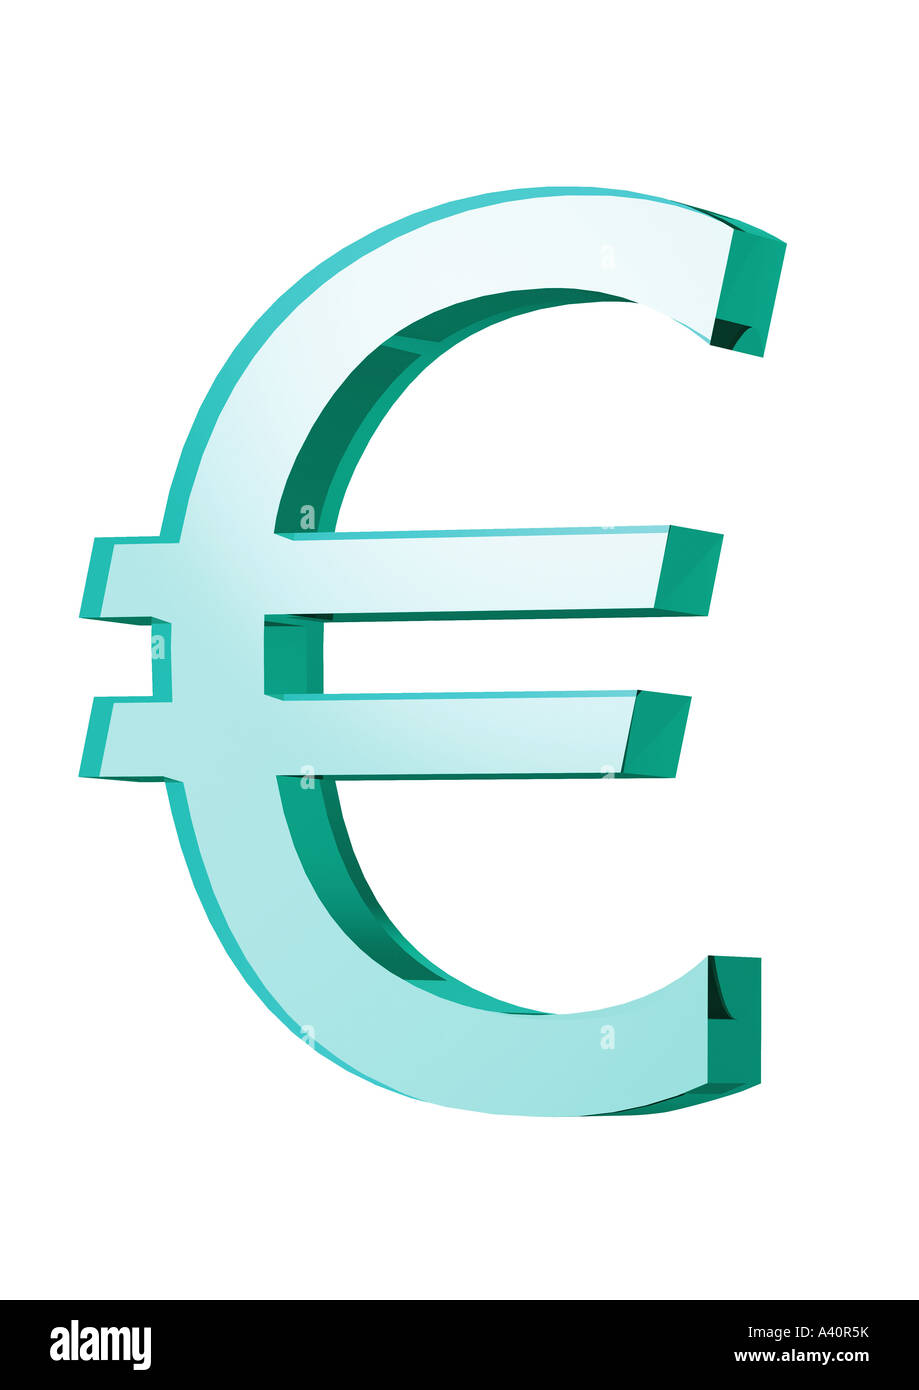 Simbolo dell'Euro Euro Zeichen Foto Stock